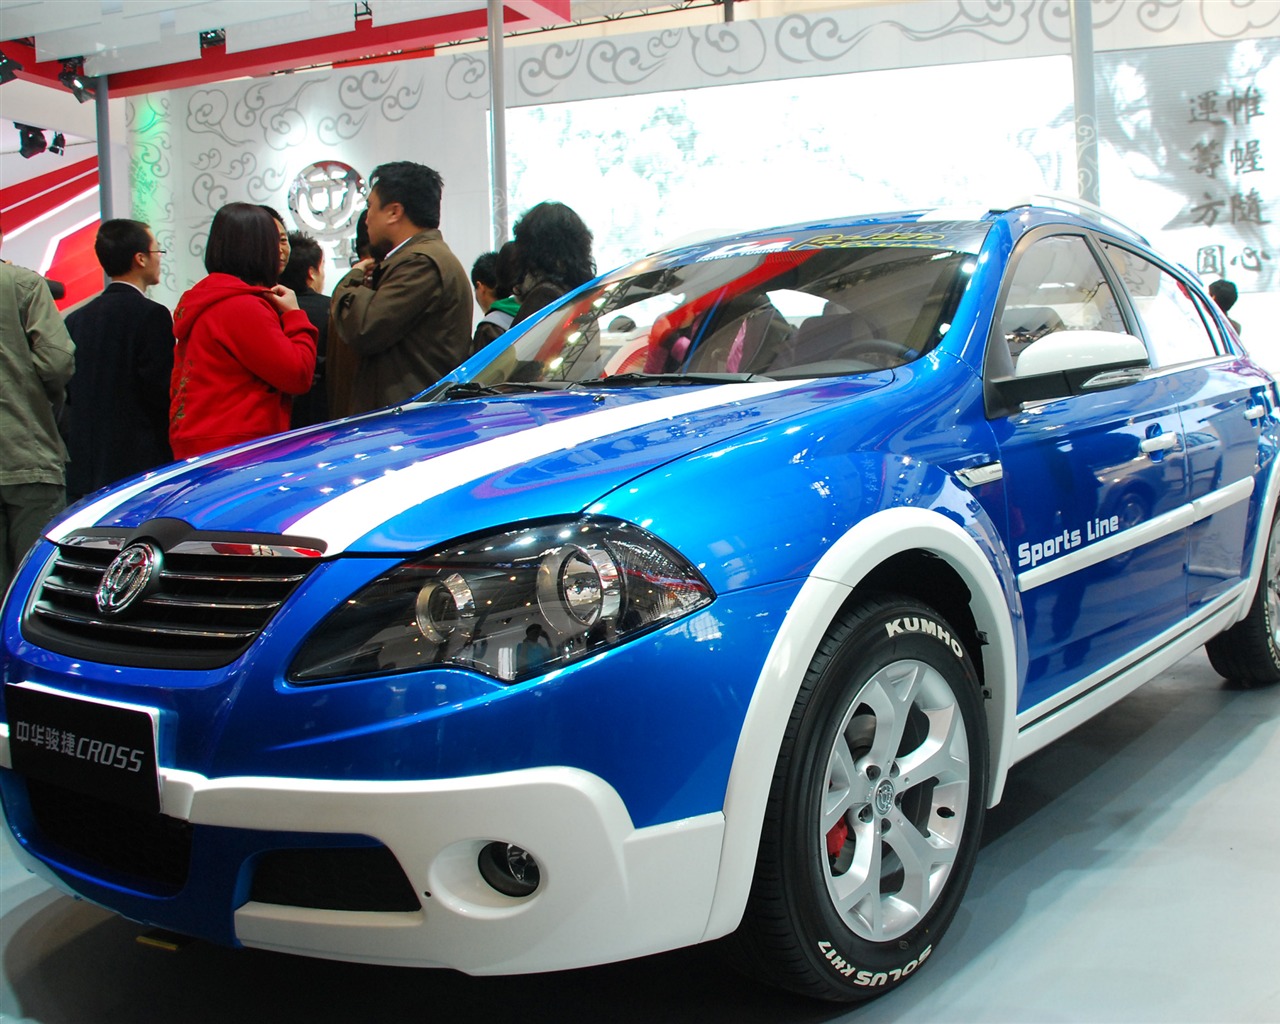 2010北京国际车展(一) (z321x123作品)21 - 1280x1024